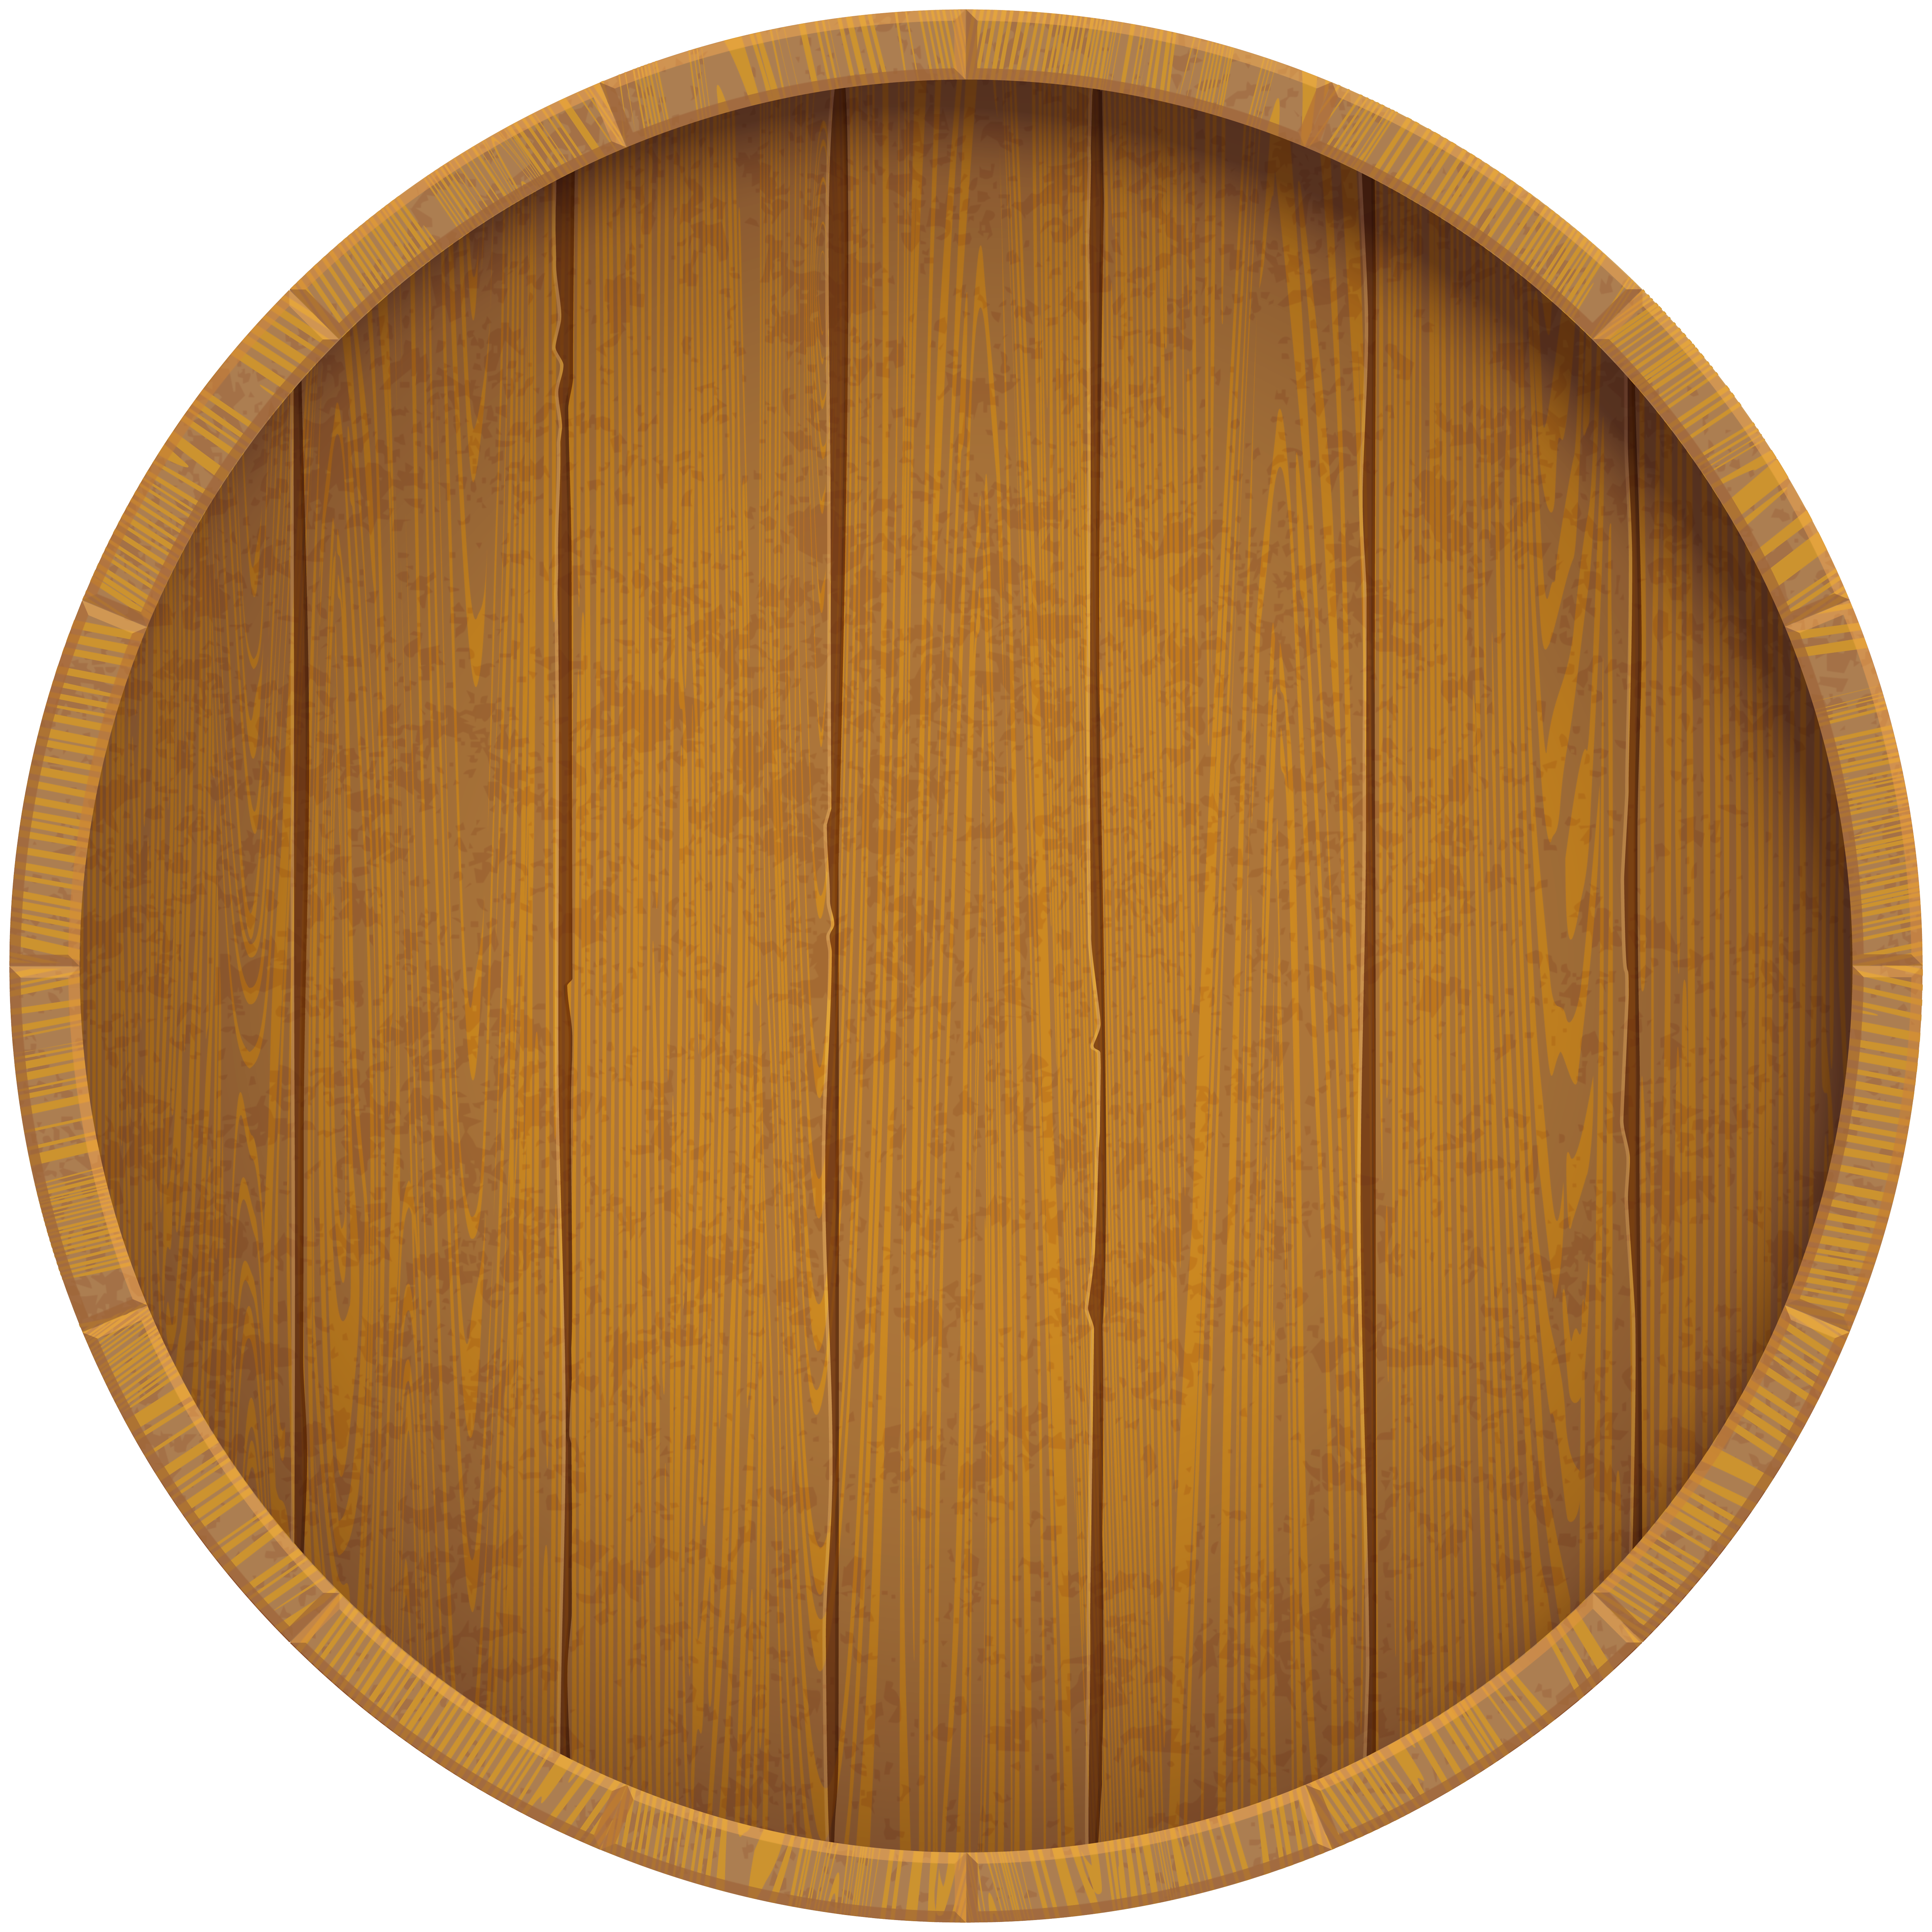 Wooden Beer Barrel Clip Art Image.